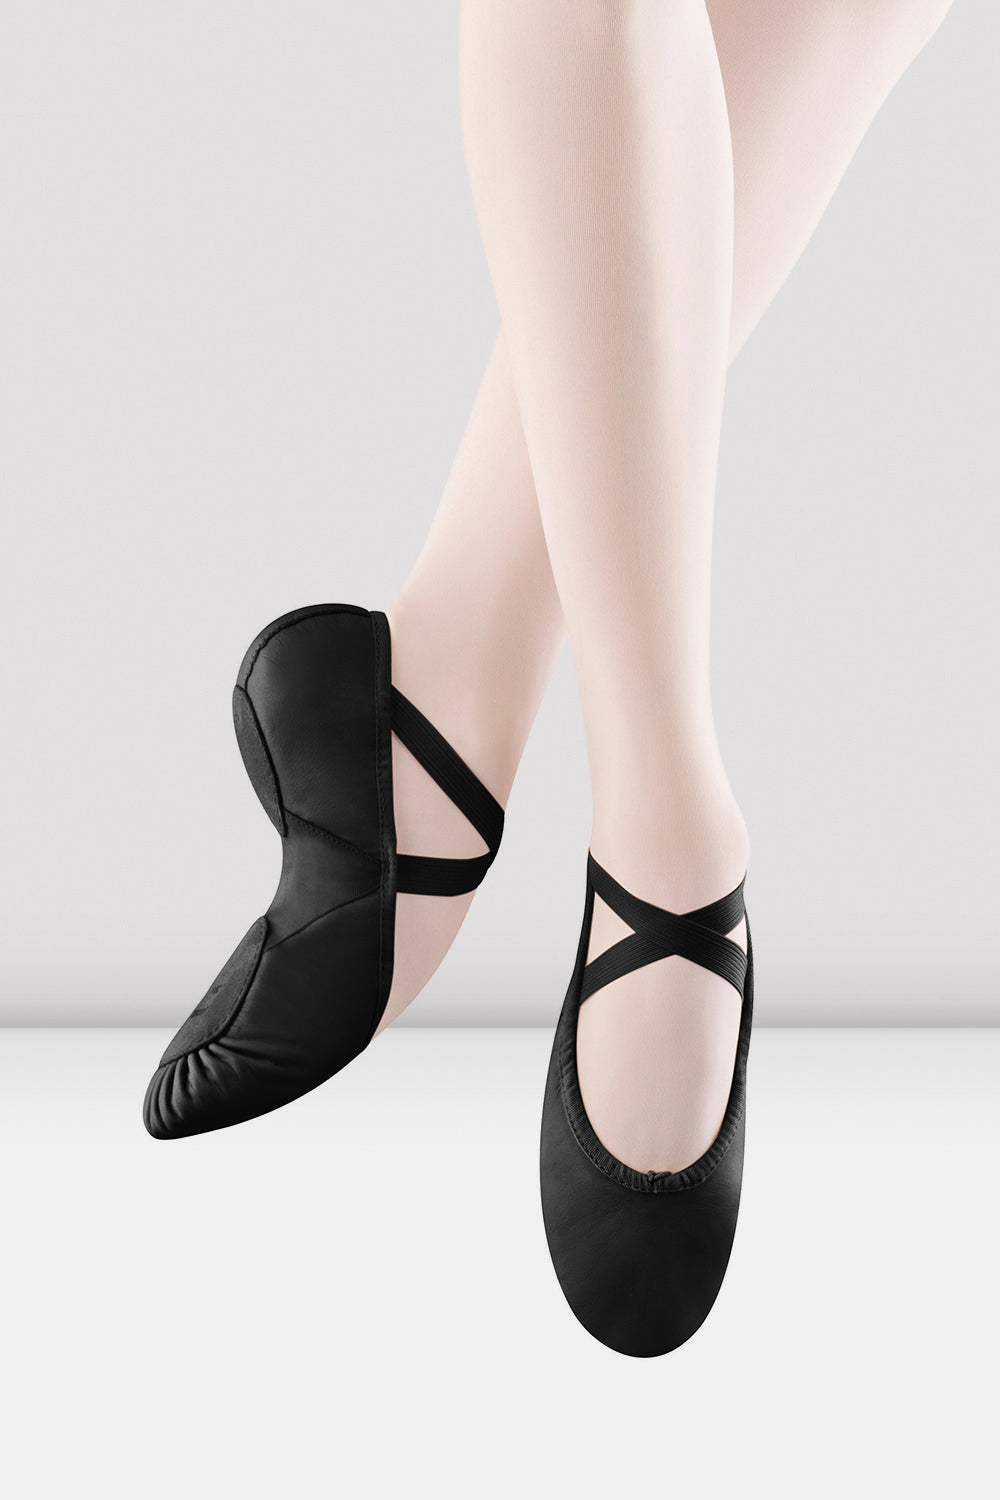 BLOCH Ladies Prolite 2 Hybrid Ballet Shoes, Black Leather